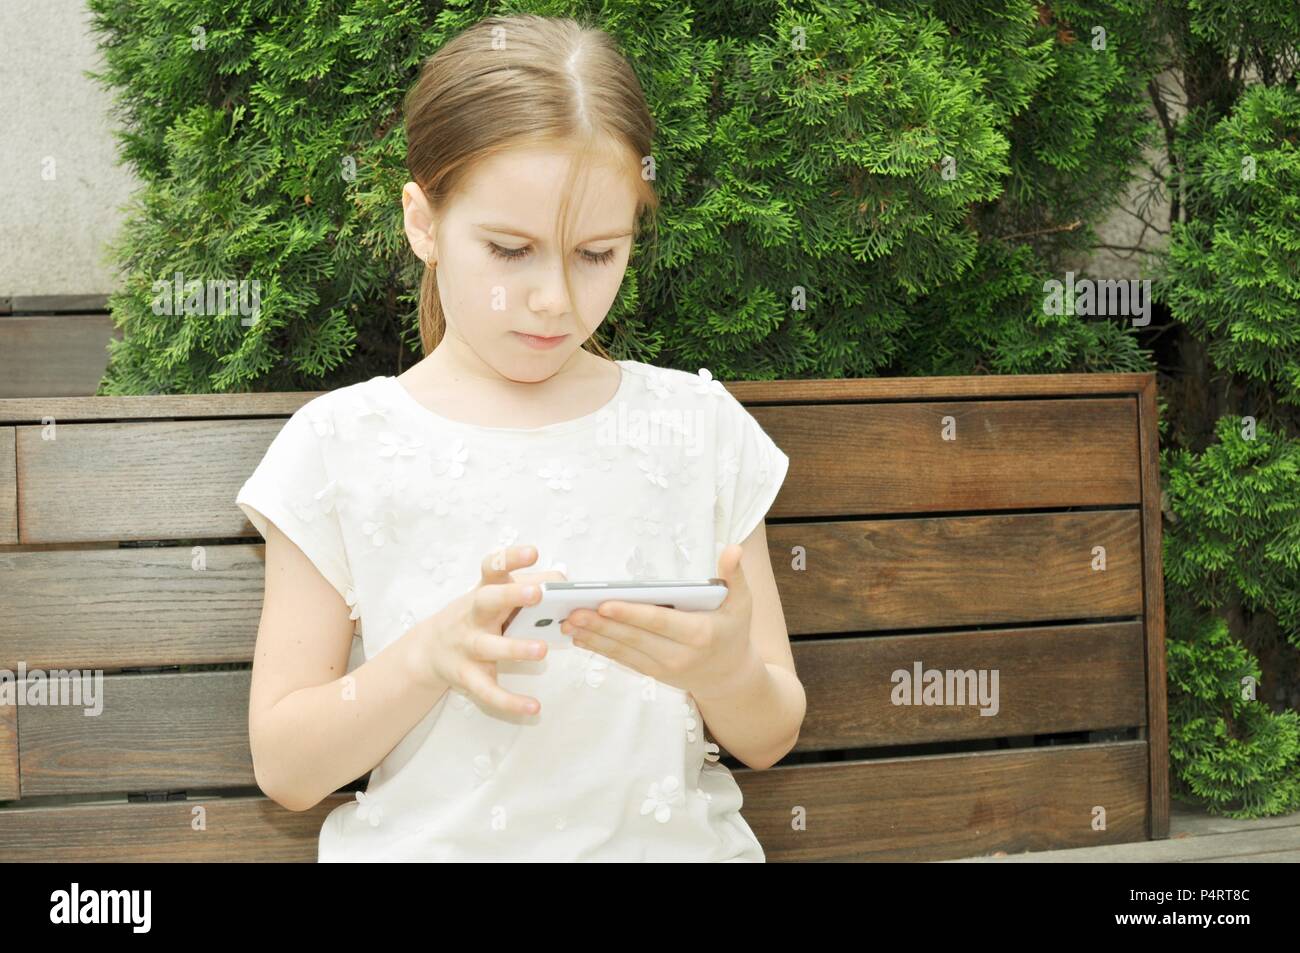 Kind, Mädchen 7-9, blonde Haare, stehend auf einer Bank und das Spielen auf dem Smartphone, Outdoor, retro style, Vorderansicht Stockfoto